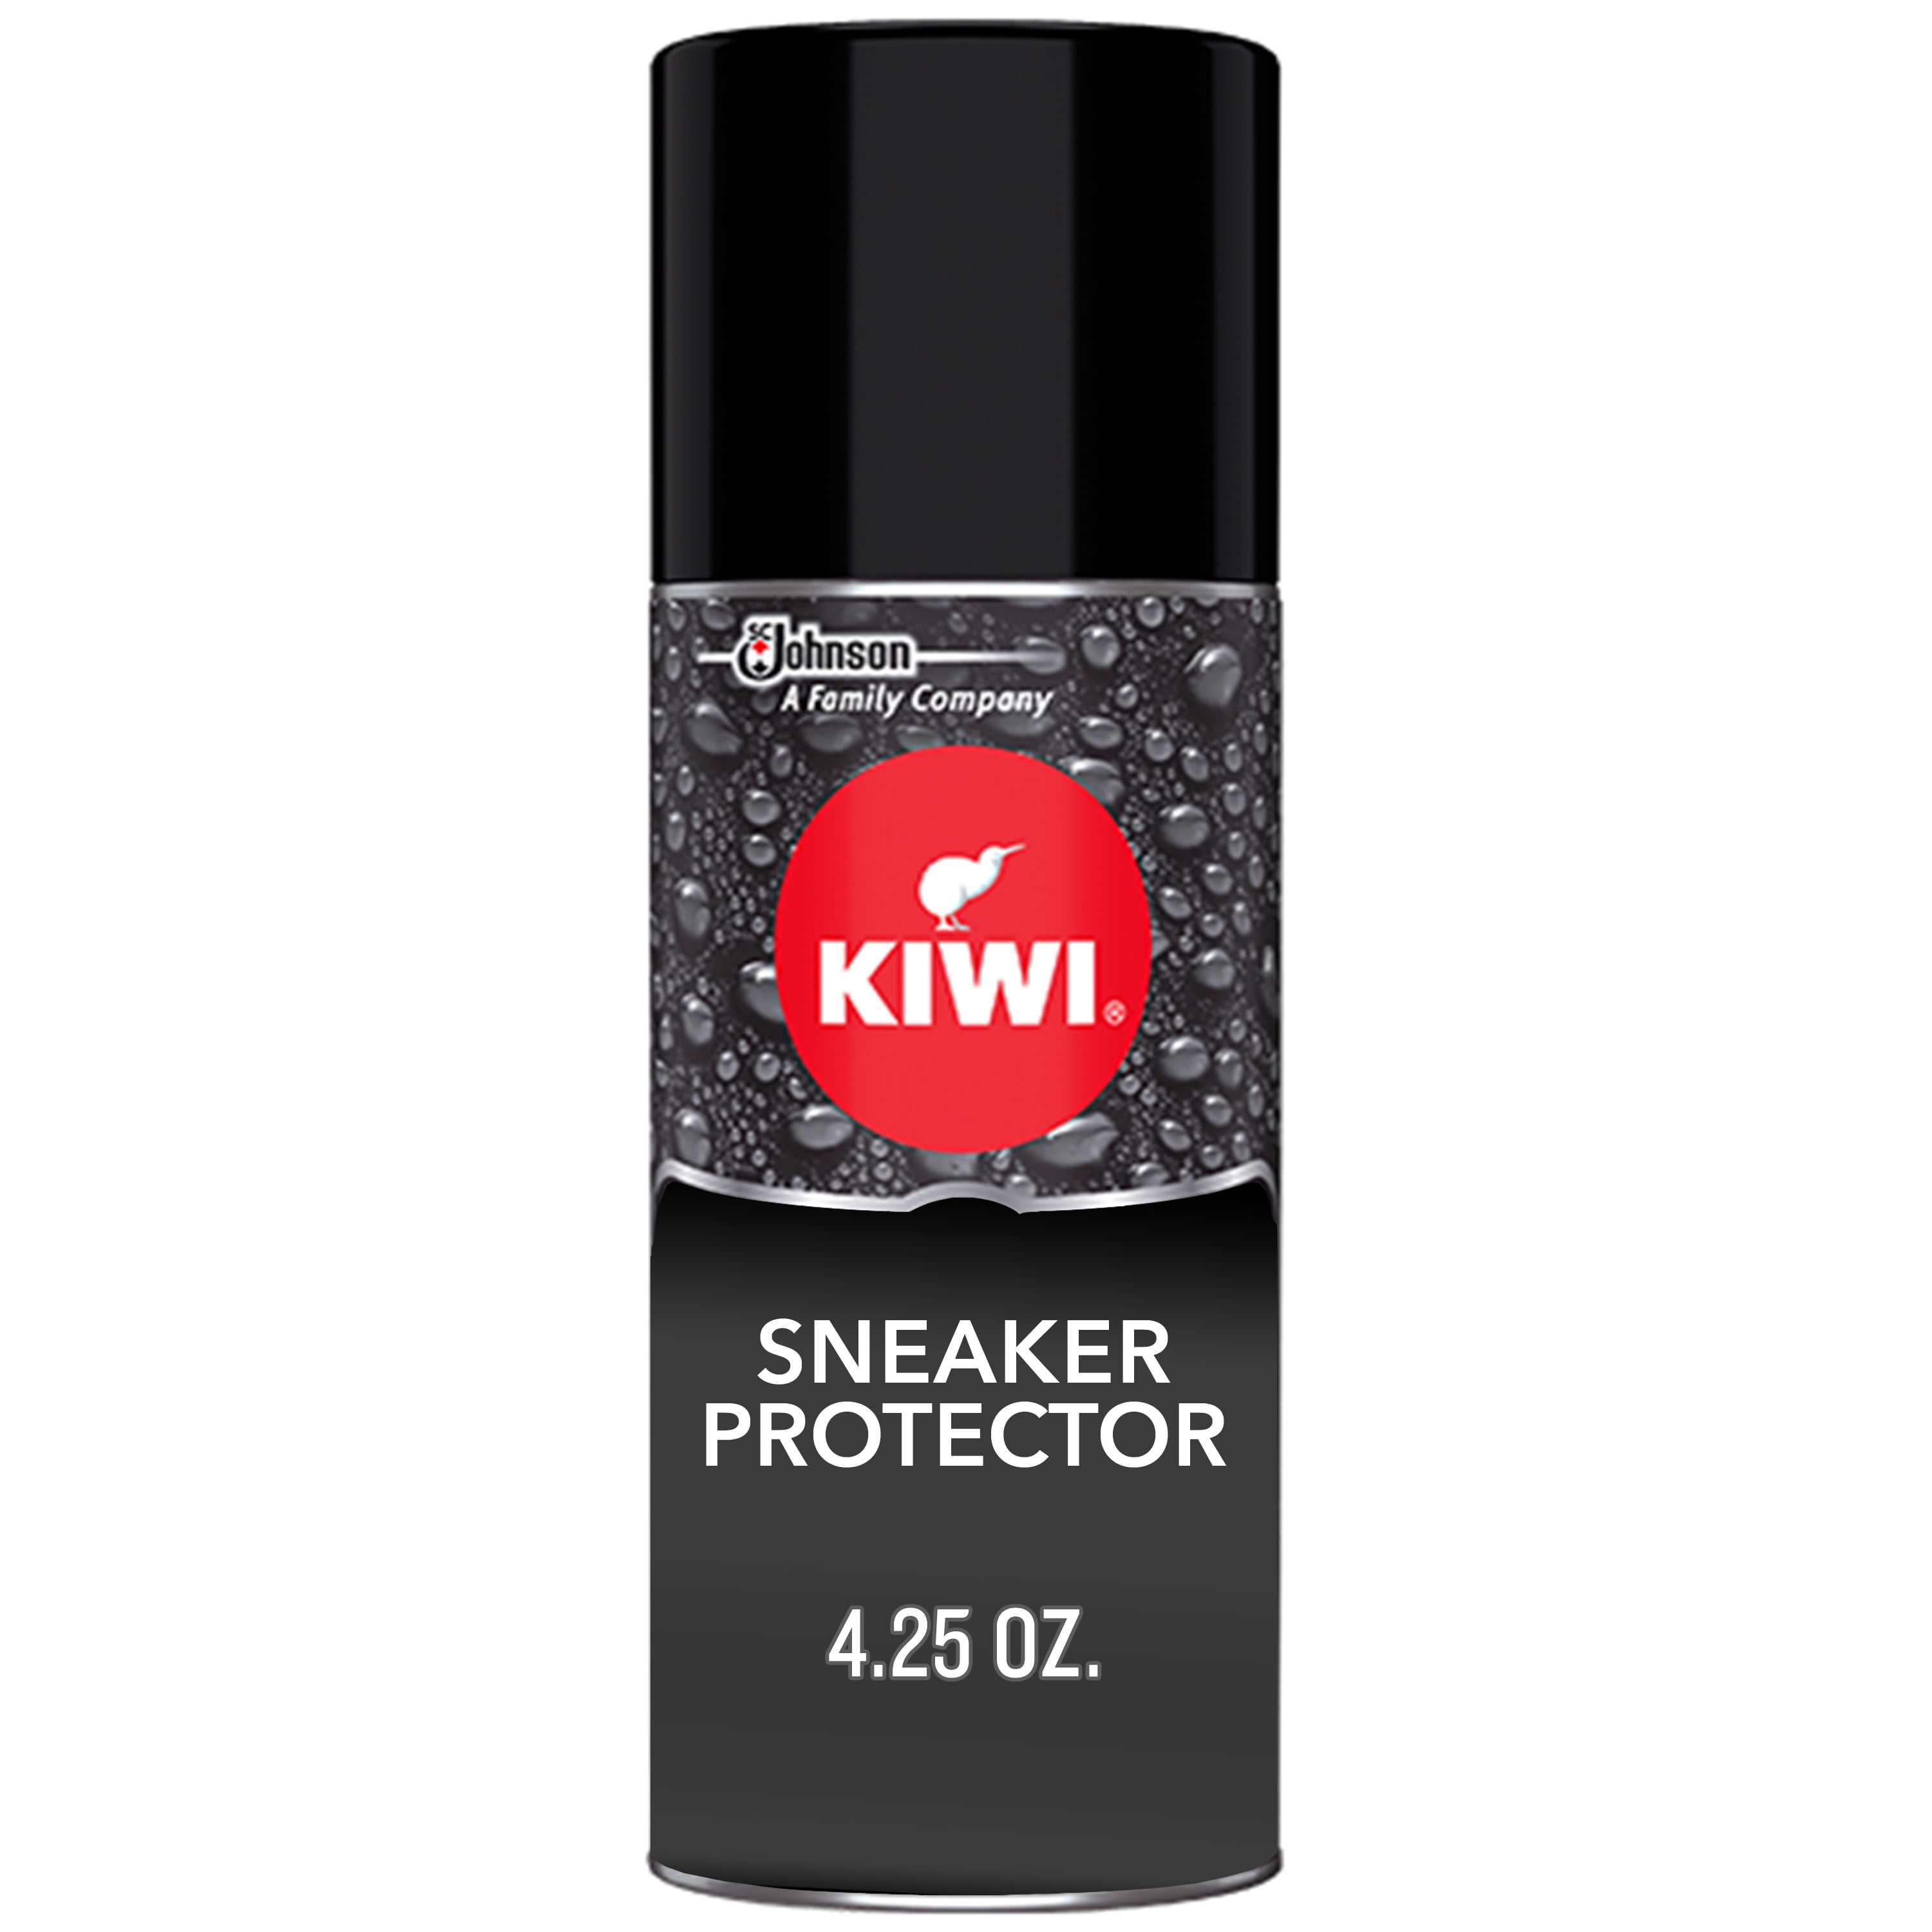 kiwi boot protector canada